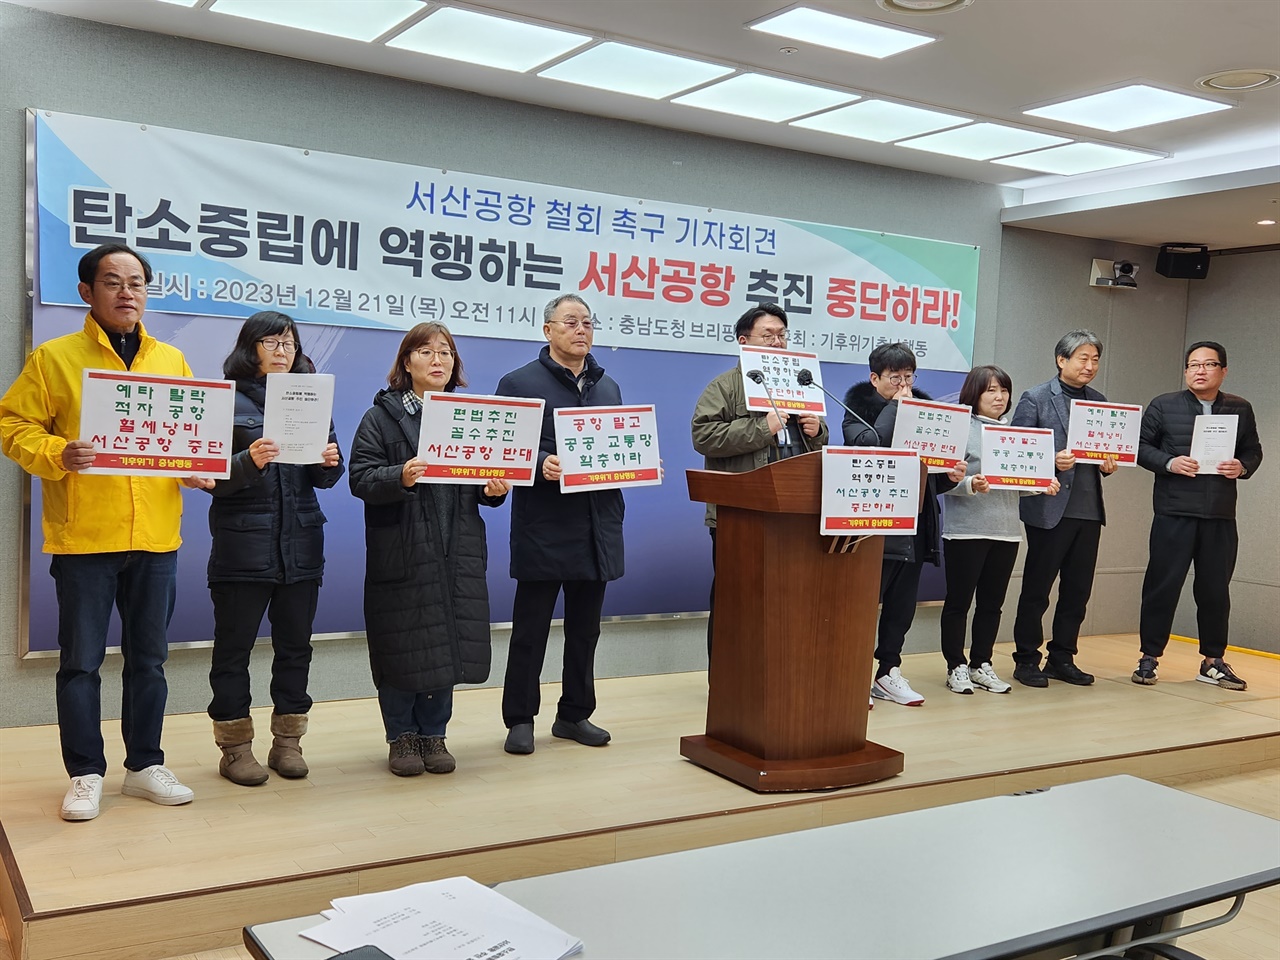 기후위기충남행동 회원들이 21일 충남도청 프레스센터에서 기자회견을 열고 서산 공항 건설 중단을 촉구했다. 